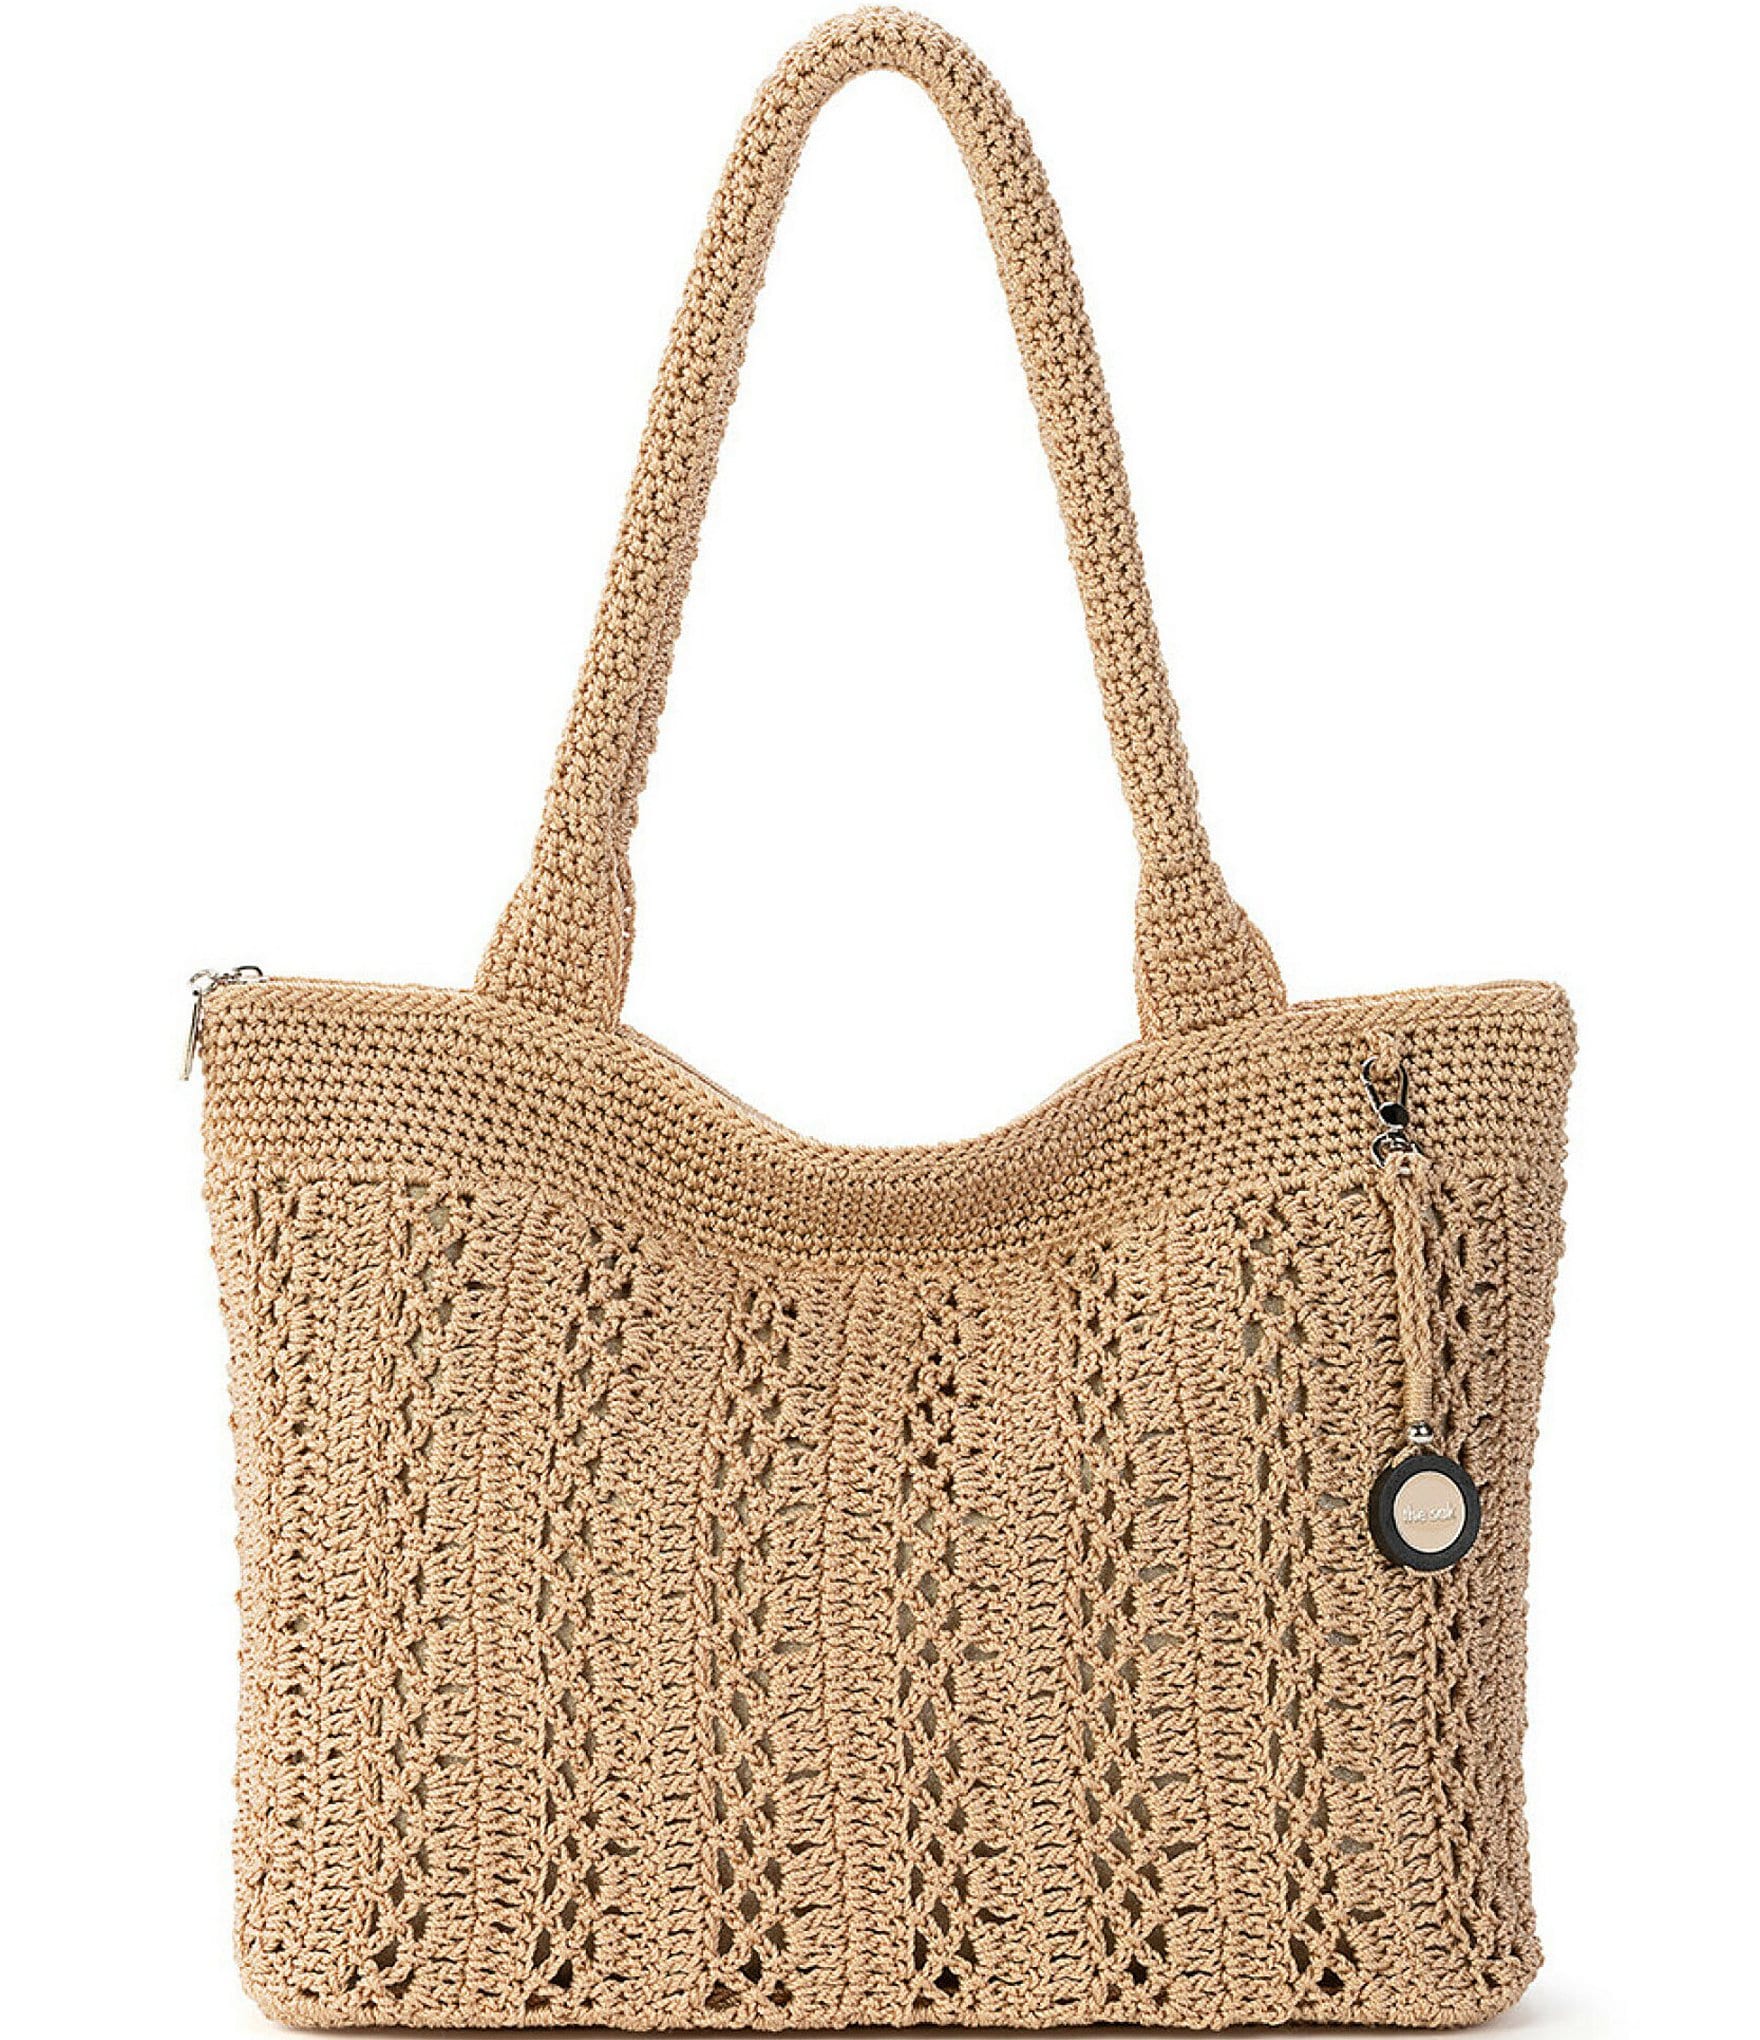 The SAK, Crochet Shoulder Bag Purse, Black V Neck | Crochet shoulder bag,  Purses and bags, Crochet shoulder bags